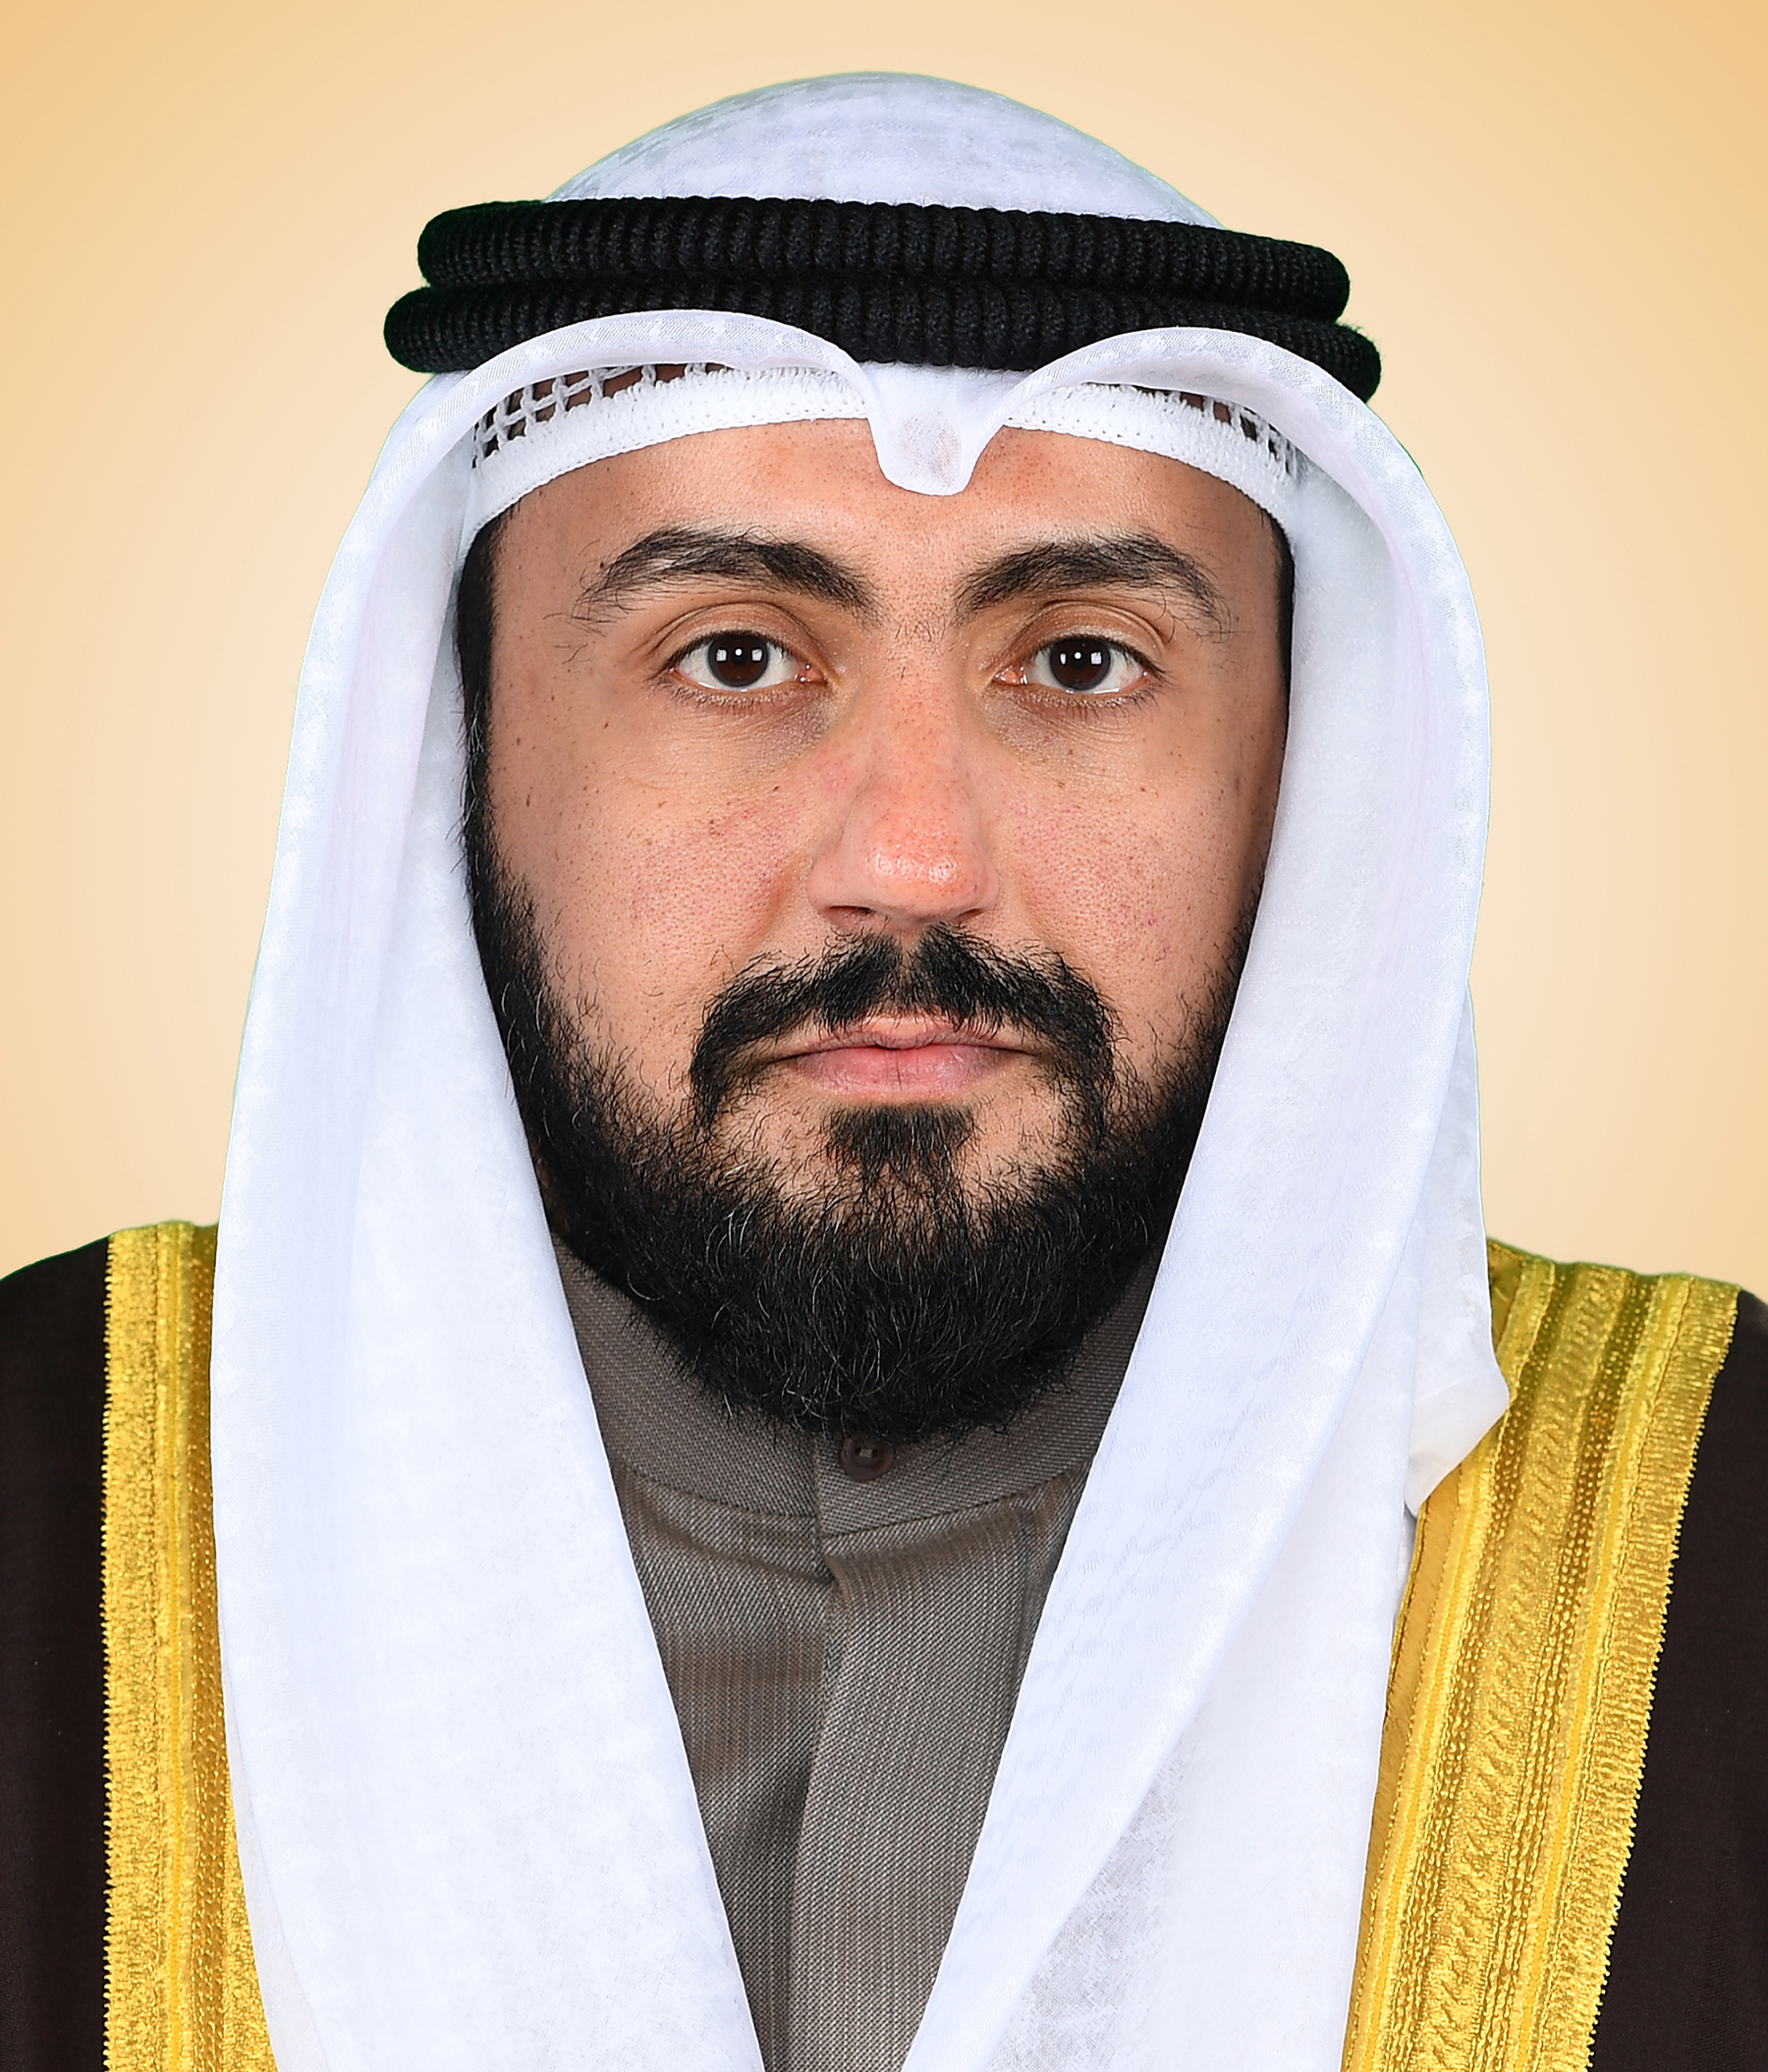 Health Minister Sheikh Dr. Bassel Al-Sabah